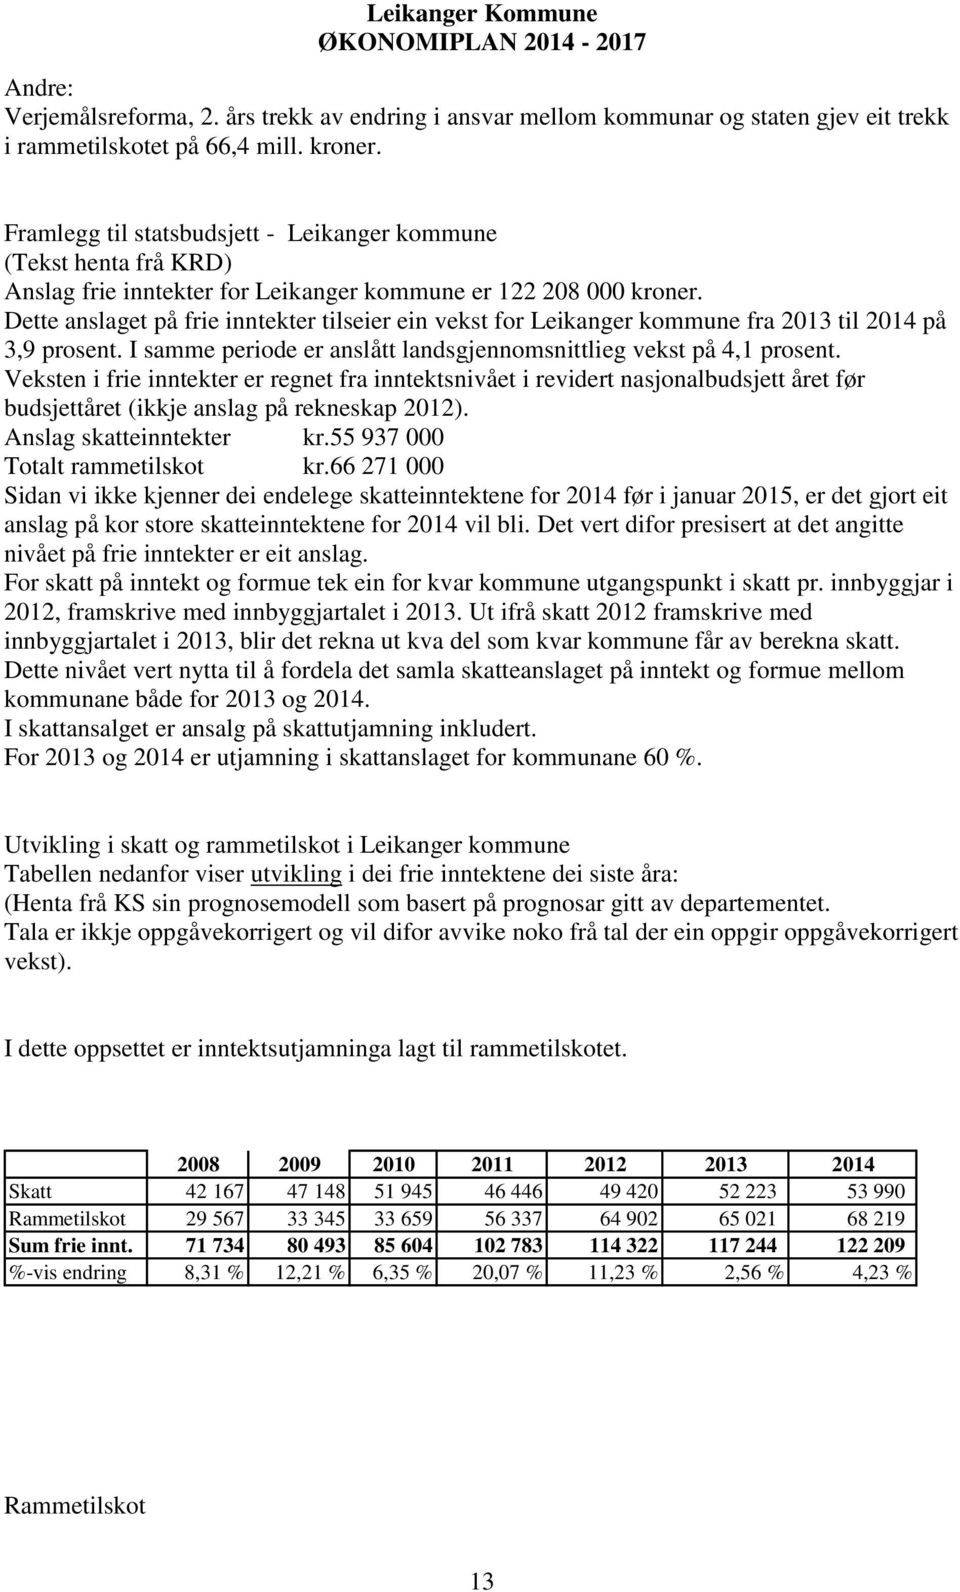 Dette anslaget på frie inntekter tilseier ein vekst for Leikanger kommune fra 2013 til 2014 på 3,9 prosent. I samme periode er anslått landsgjennomsnittlieg vekst på 4,1 prosent.